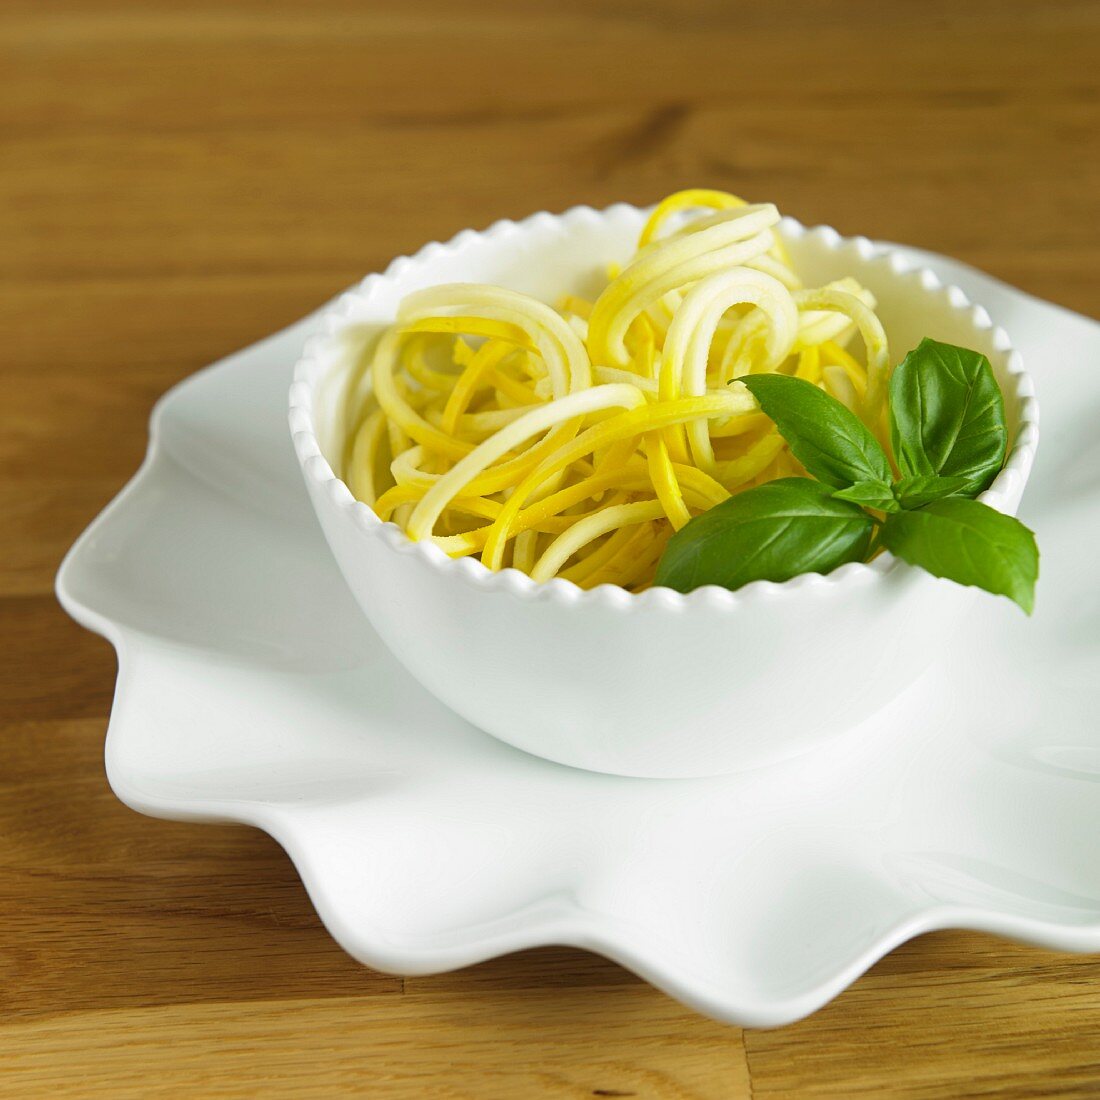 Gelbe Zucchinisppaghetti mit Basilikum in weisser Schale